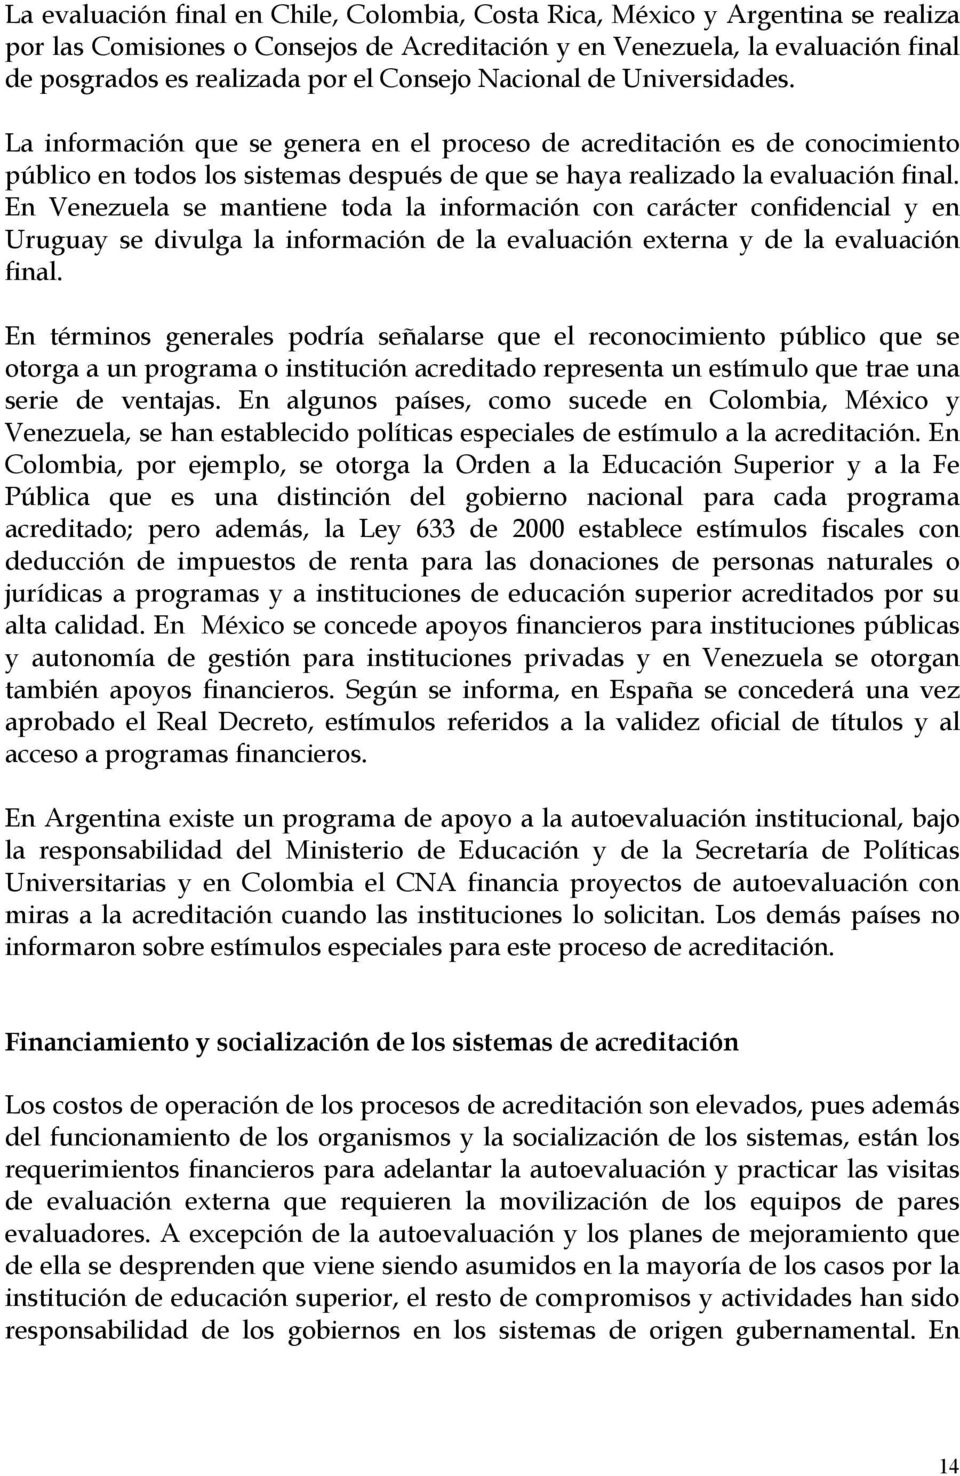 En Venezuela se mantiene toda la información con carácter confidencial y en Uruguay se divulga la información de la evaluación externa y de la evaluación final.